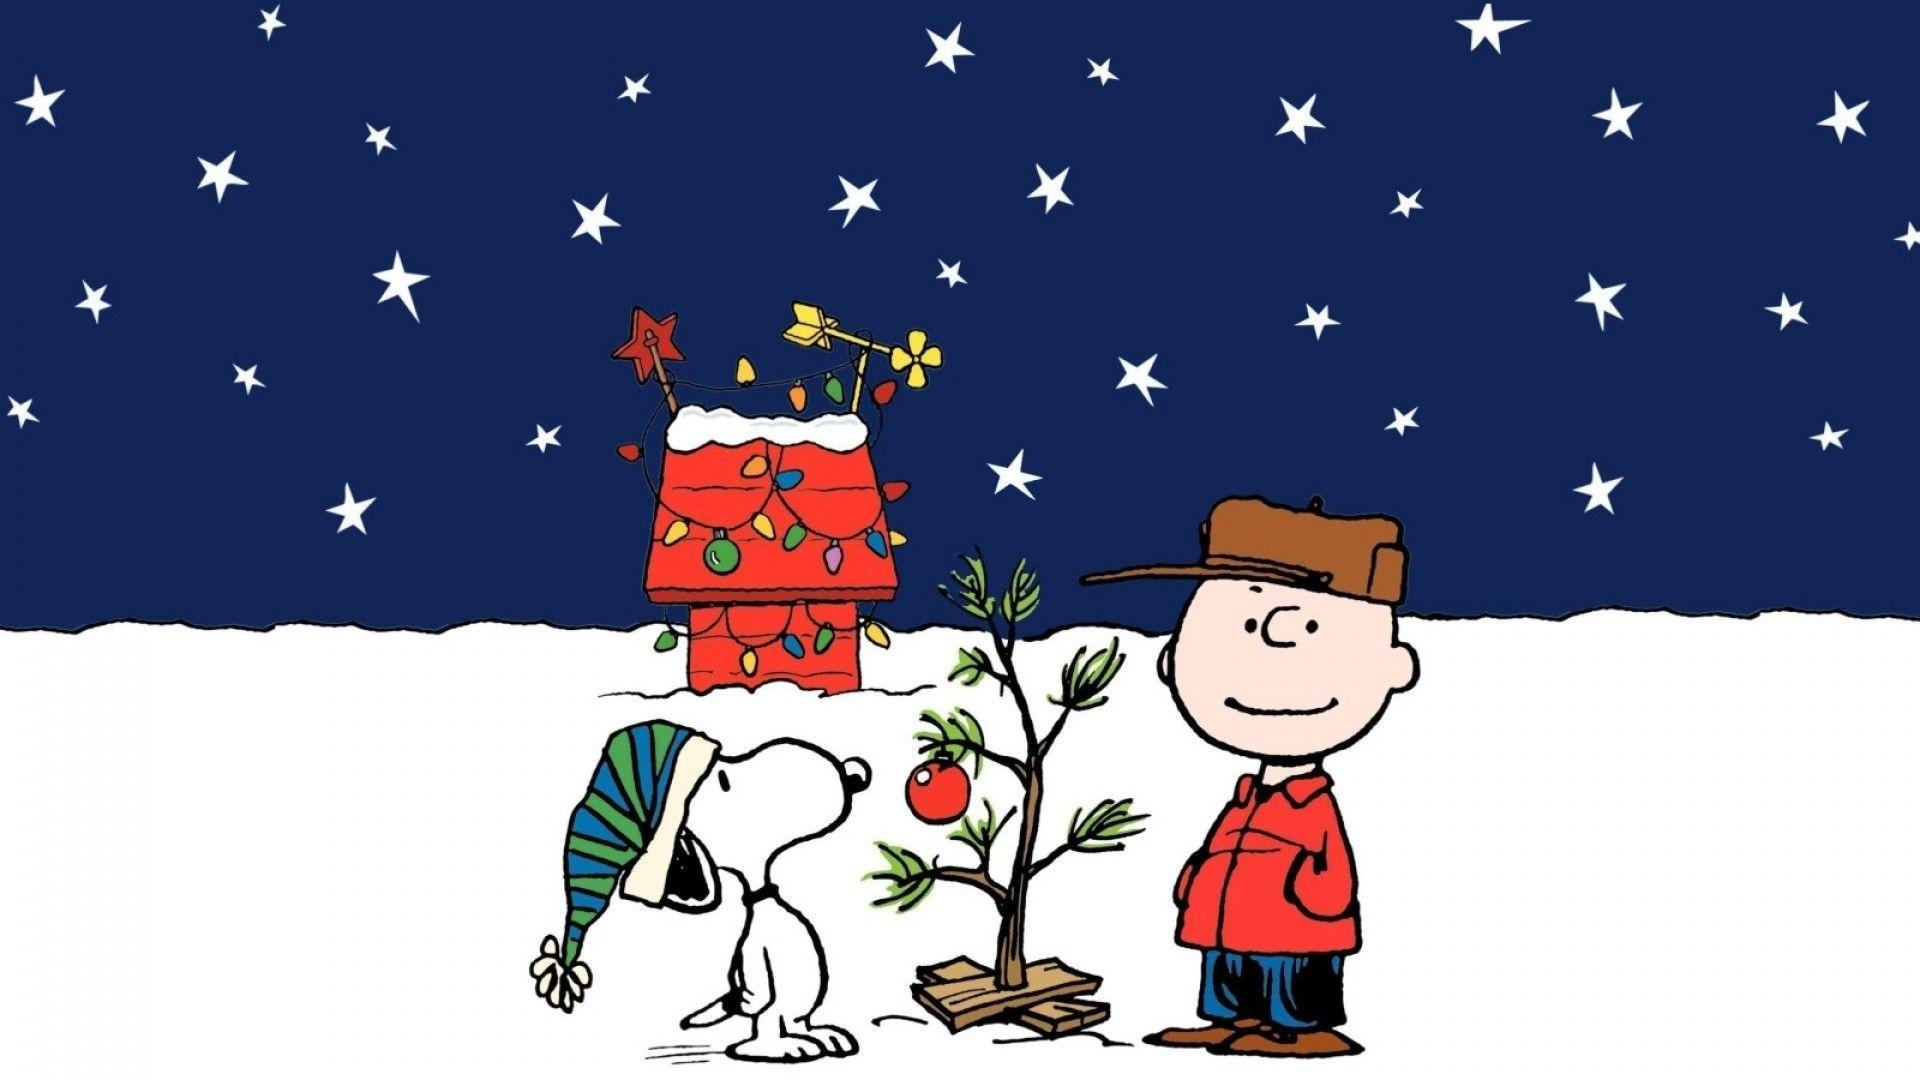 Hãy cùng khám phá hình nền đáng yêu với nhân vật chính là Snoopy trong mùa Giáng sinh nhé! Những vần thơ ngọt ngào cùng hình ảnh rực rỡ sẽ nhanh chóng làm tan chảy khí trời giá lạnh.